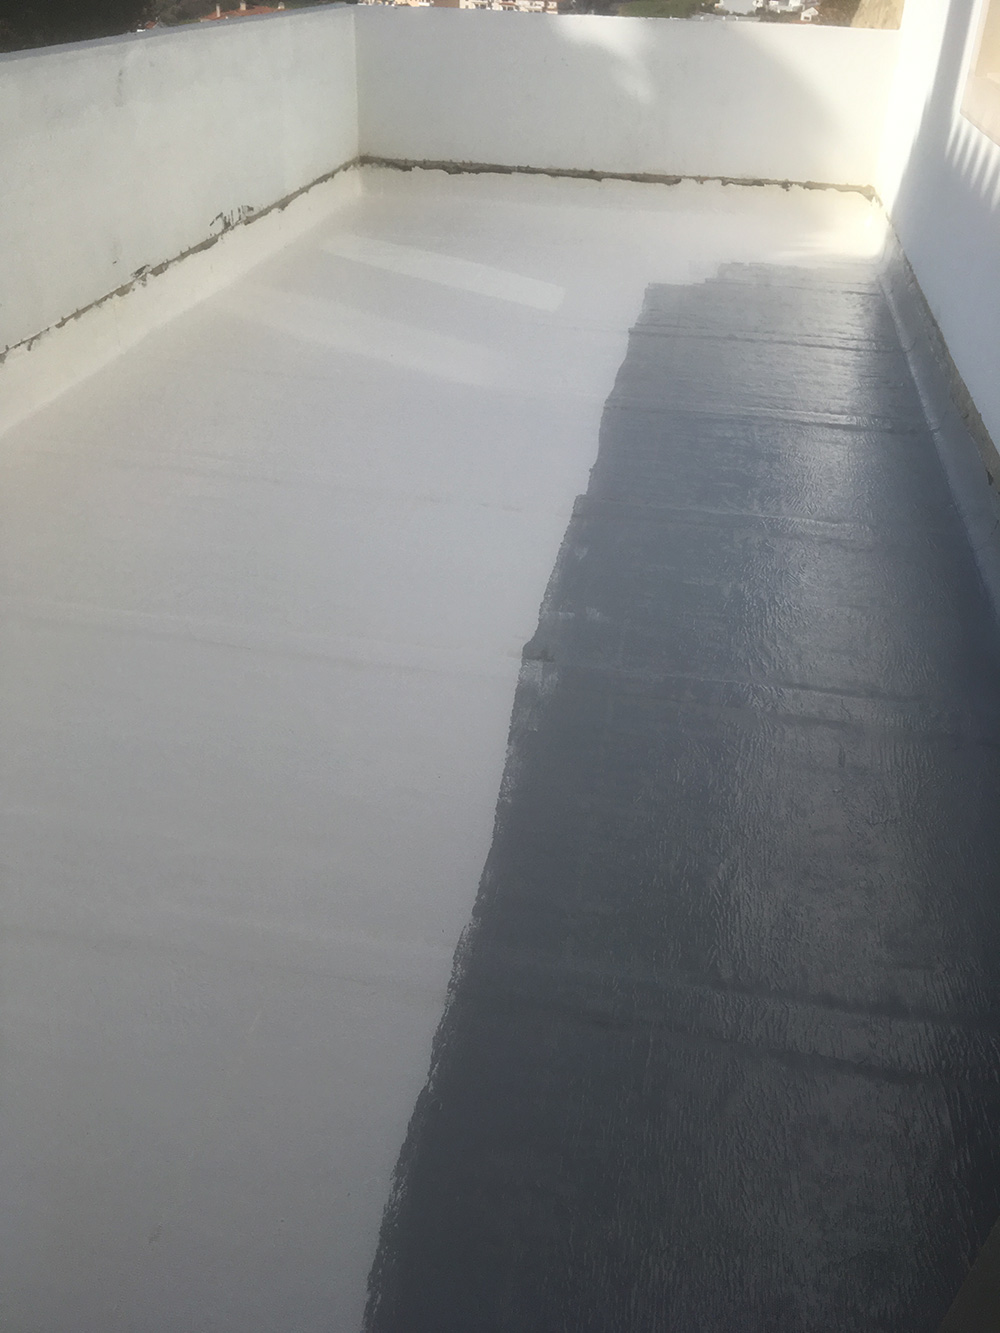 3 - Isolamento do terraço aplicação de duas demãos de poliuretano por cima da tela pronto a aplicar o geotextil e betonilha